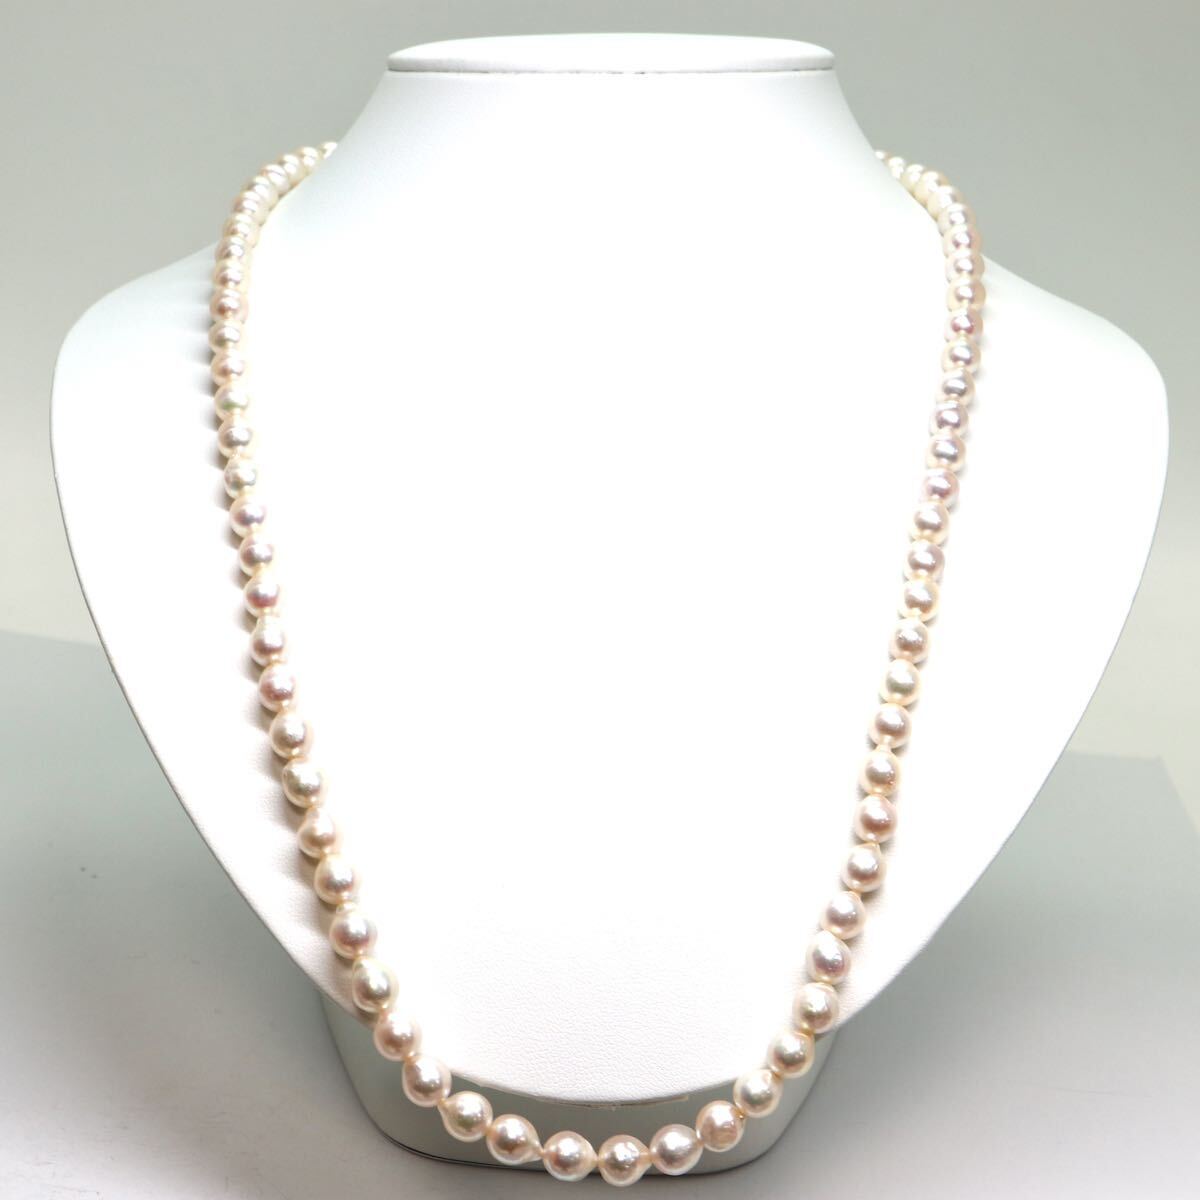 《アコヤ本真珠ネックレス》M 約7.0-7.5mm珠 41.6g 約62cm pearl necklace ジュエリー jewelry DC0/DE0_画像2